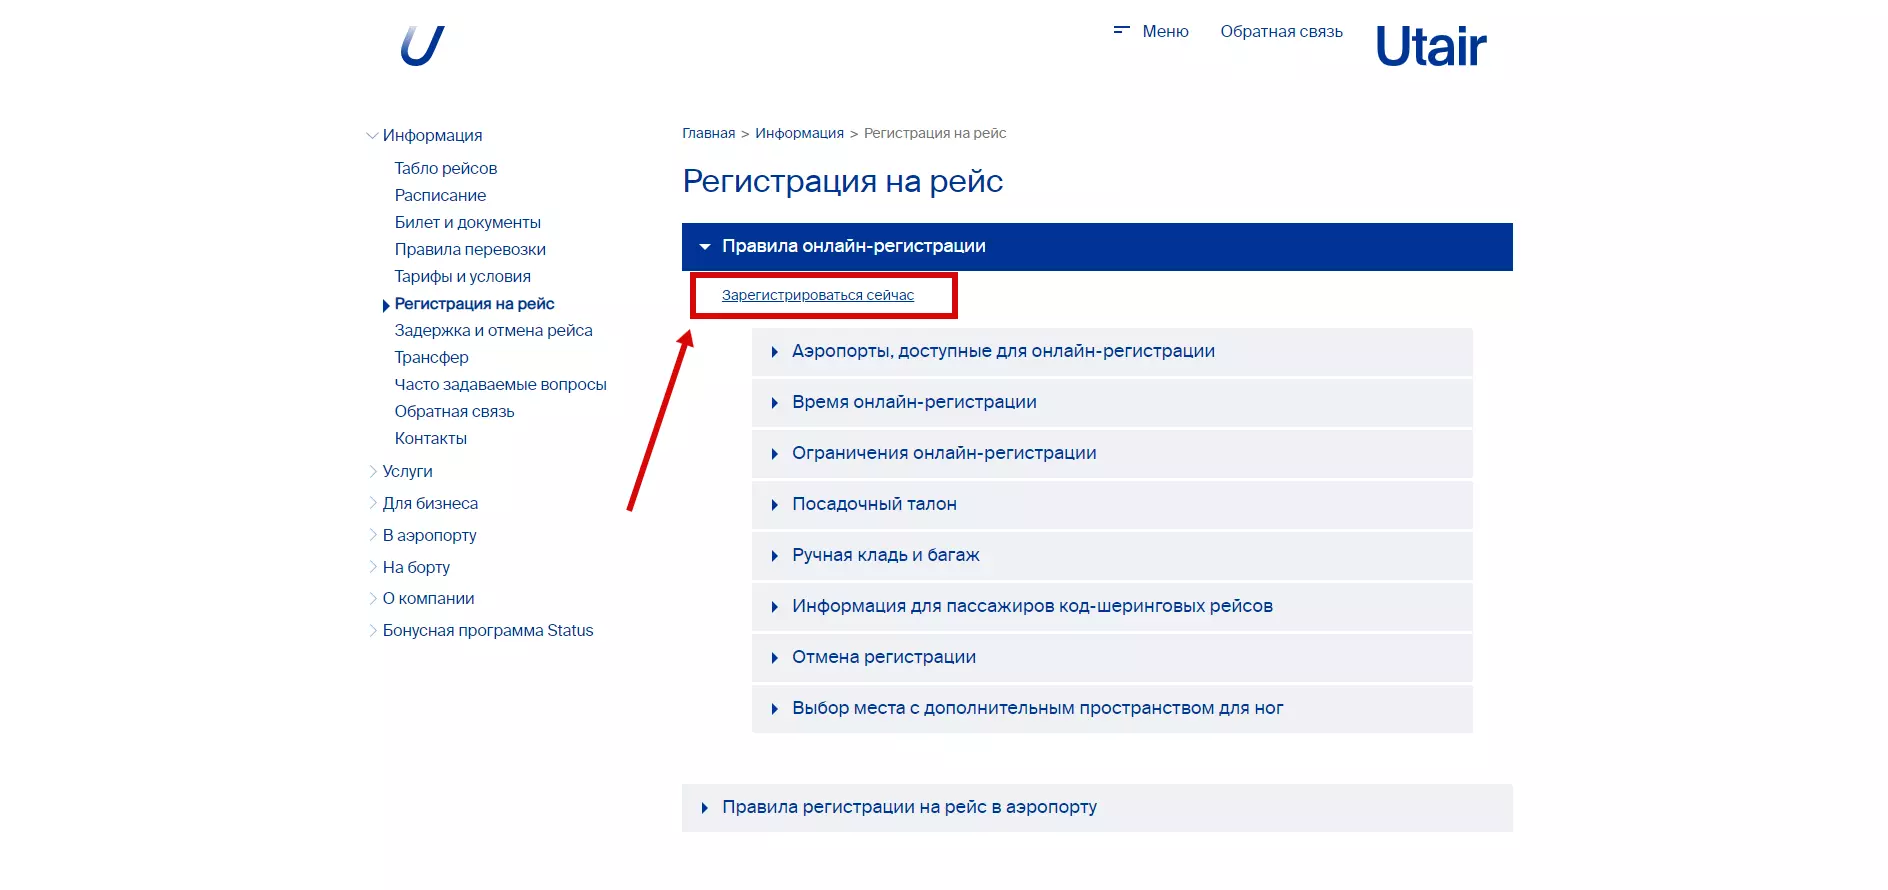 Регистрация на рейс ютэйр онлайн во внуково: электронная регистрация через интернет